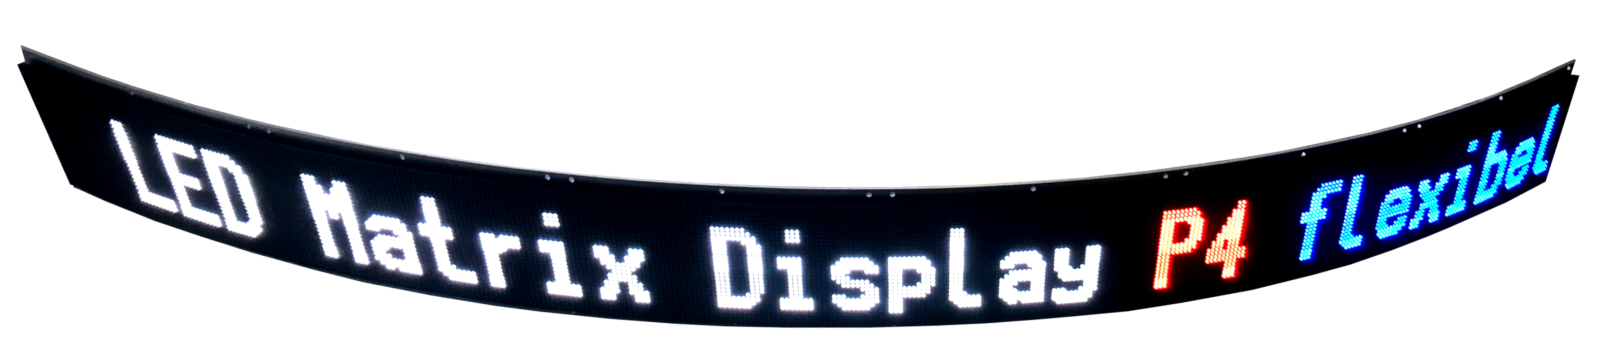 LED display matriciel flexible, 128 x 1.536 mm, pas de pixel 4 mm, intérieur, RVB